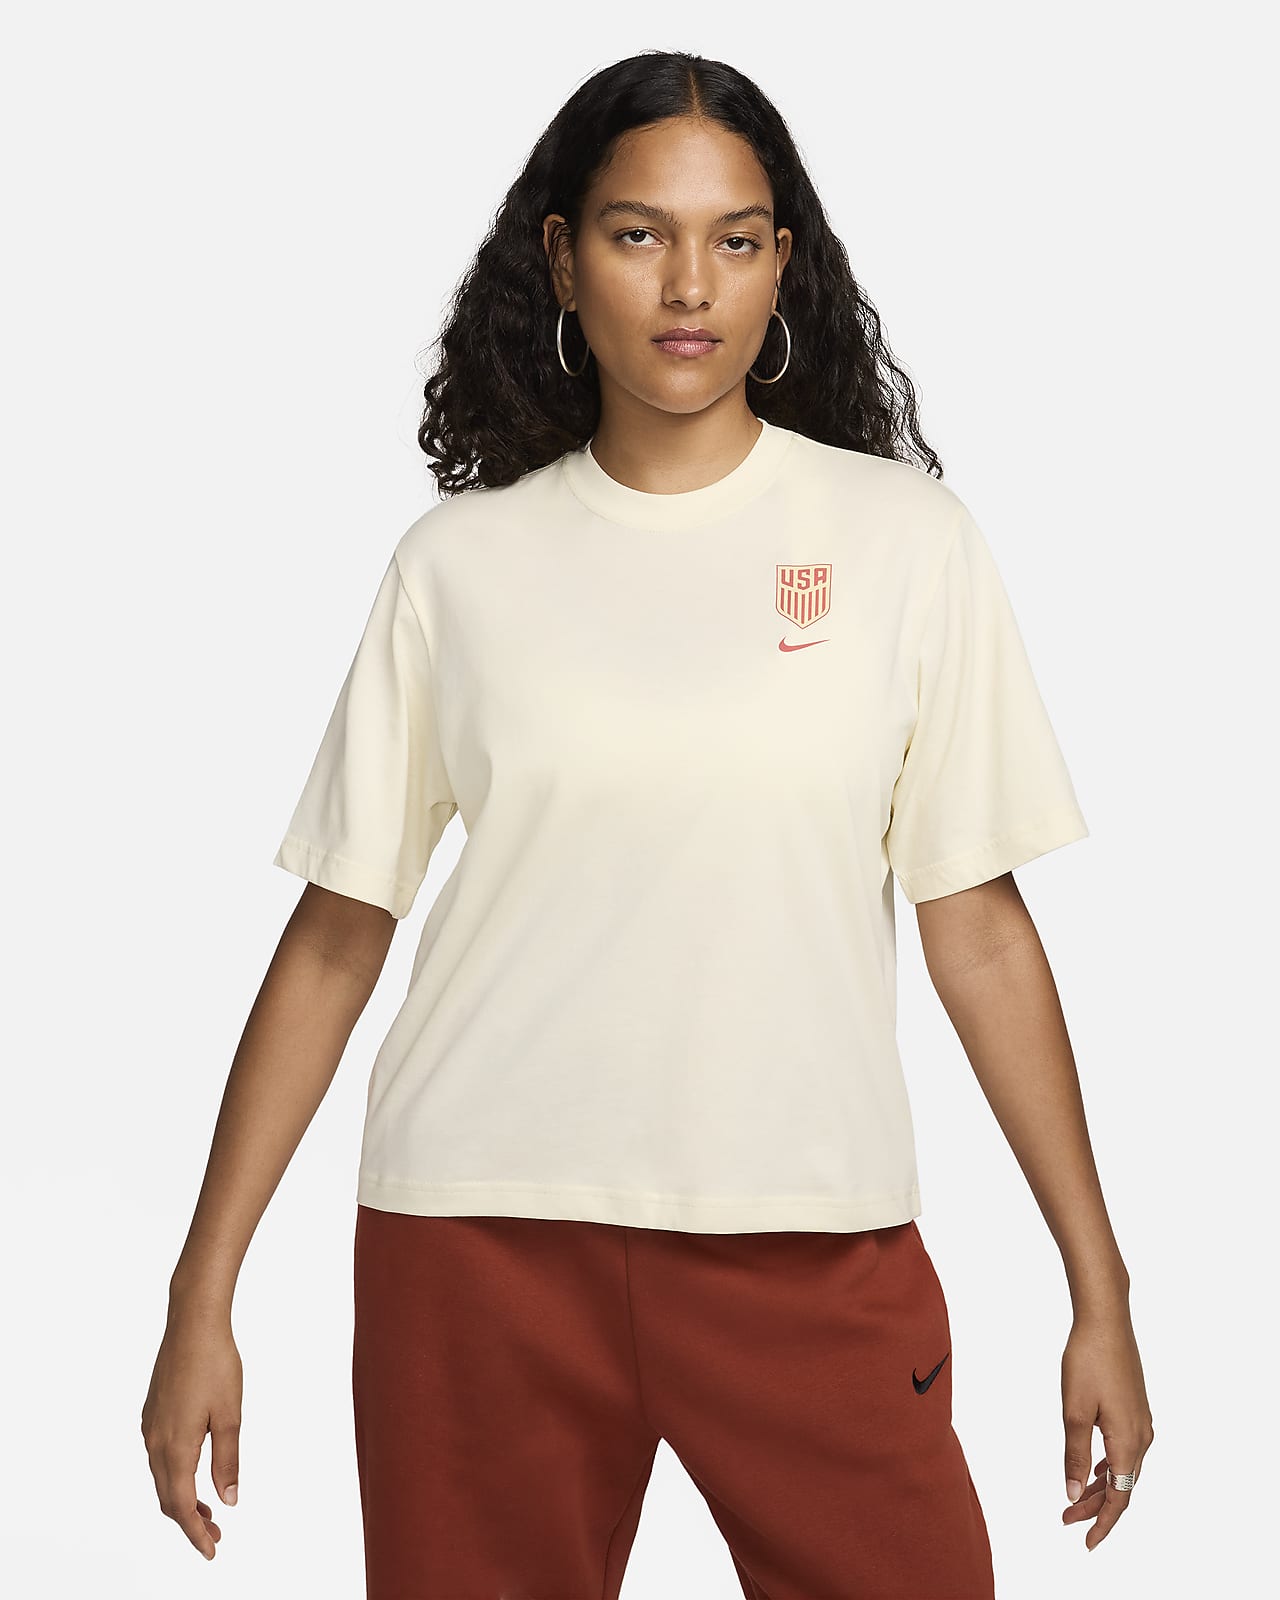 USA Women's Nike Soccer T-Shirt